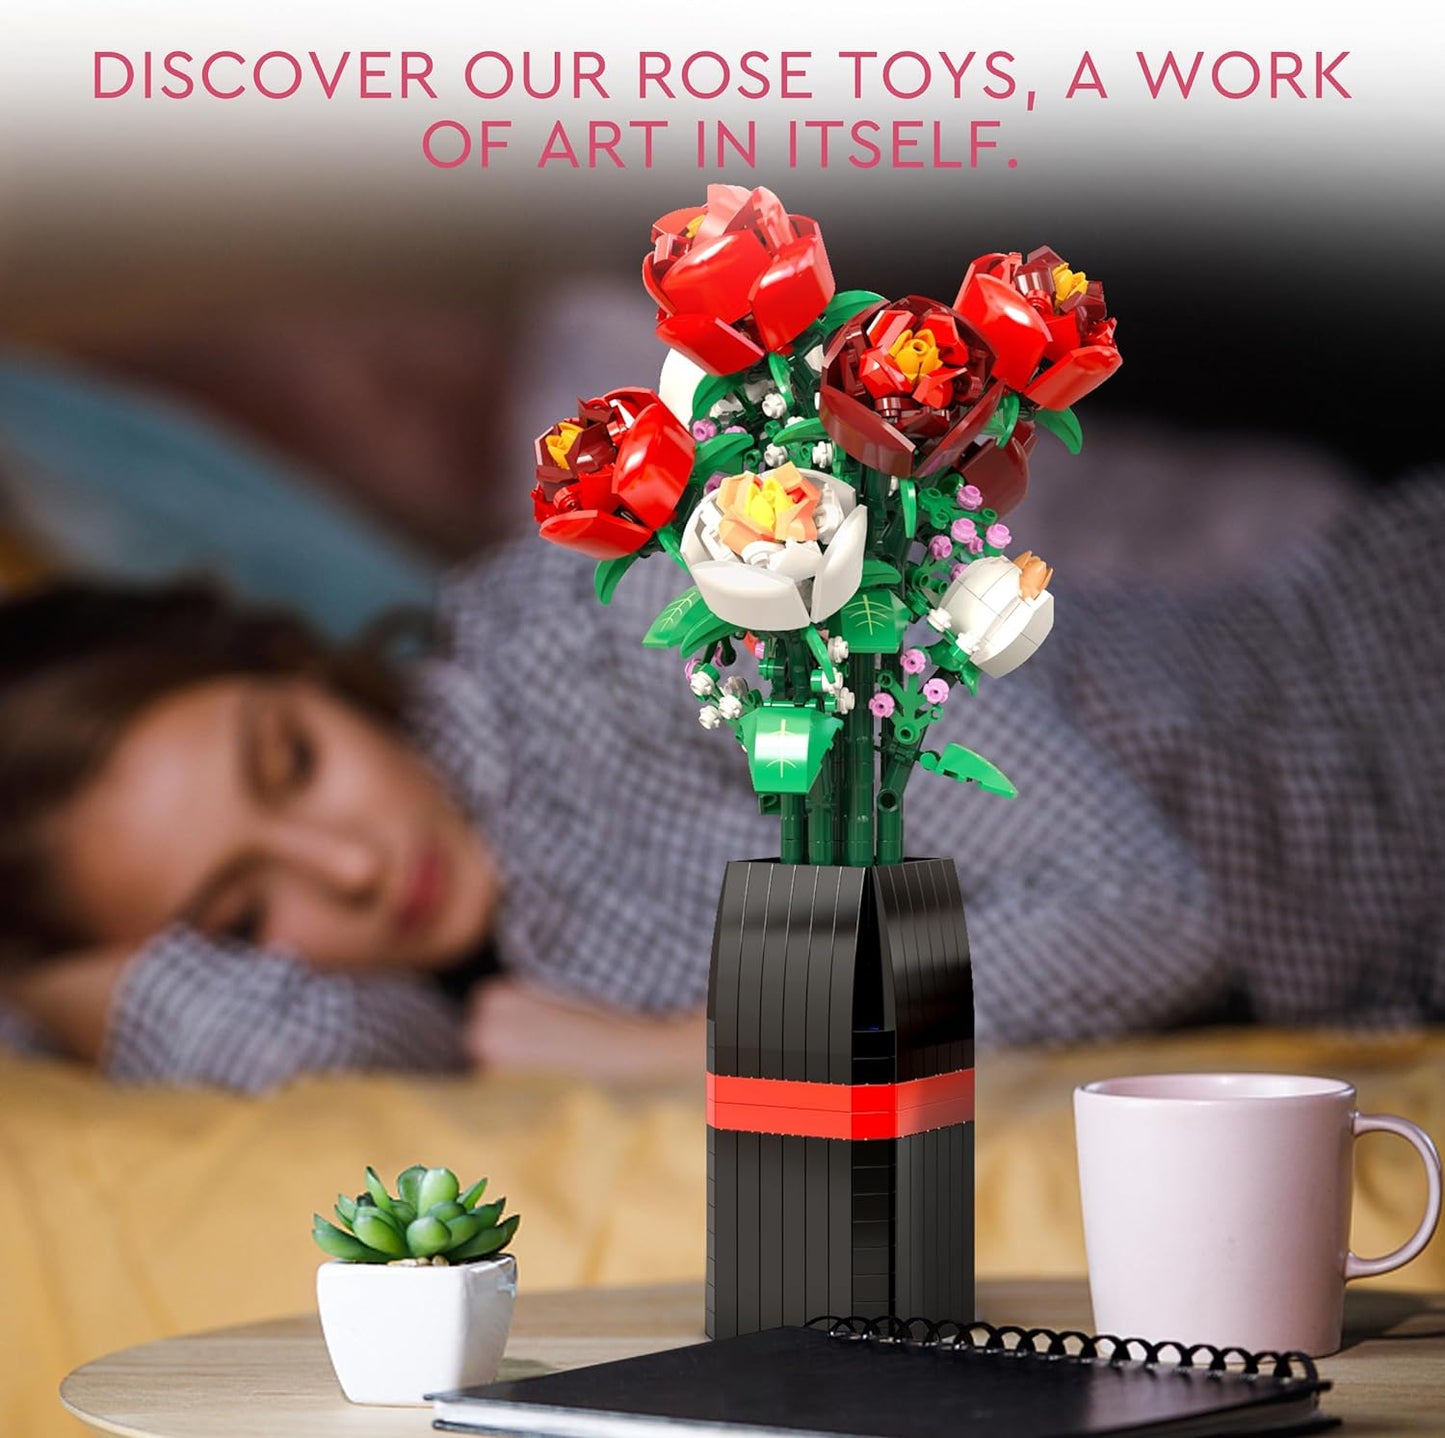 Blumenstrauß-Bausatz (818 Teile) – Weihnachts-, Muttertags- oder Valentinstagsgeschenk, ideal für Kinder, Frauen, Mädchen und Jungen, Rosen-Spielzeug-Bausatz mit Vase 